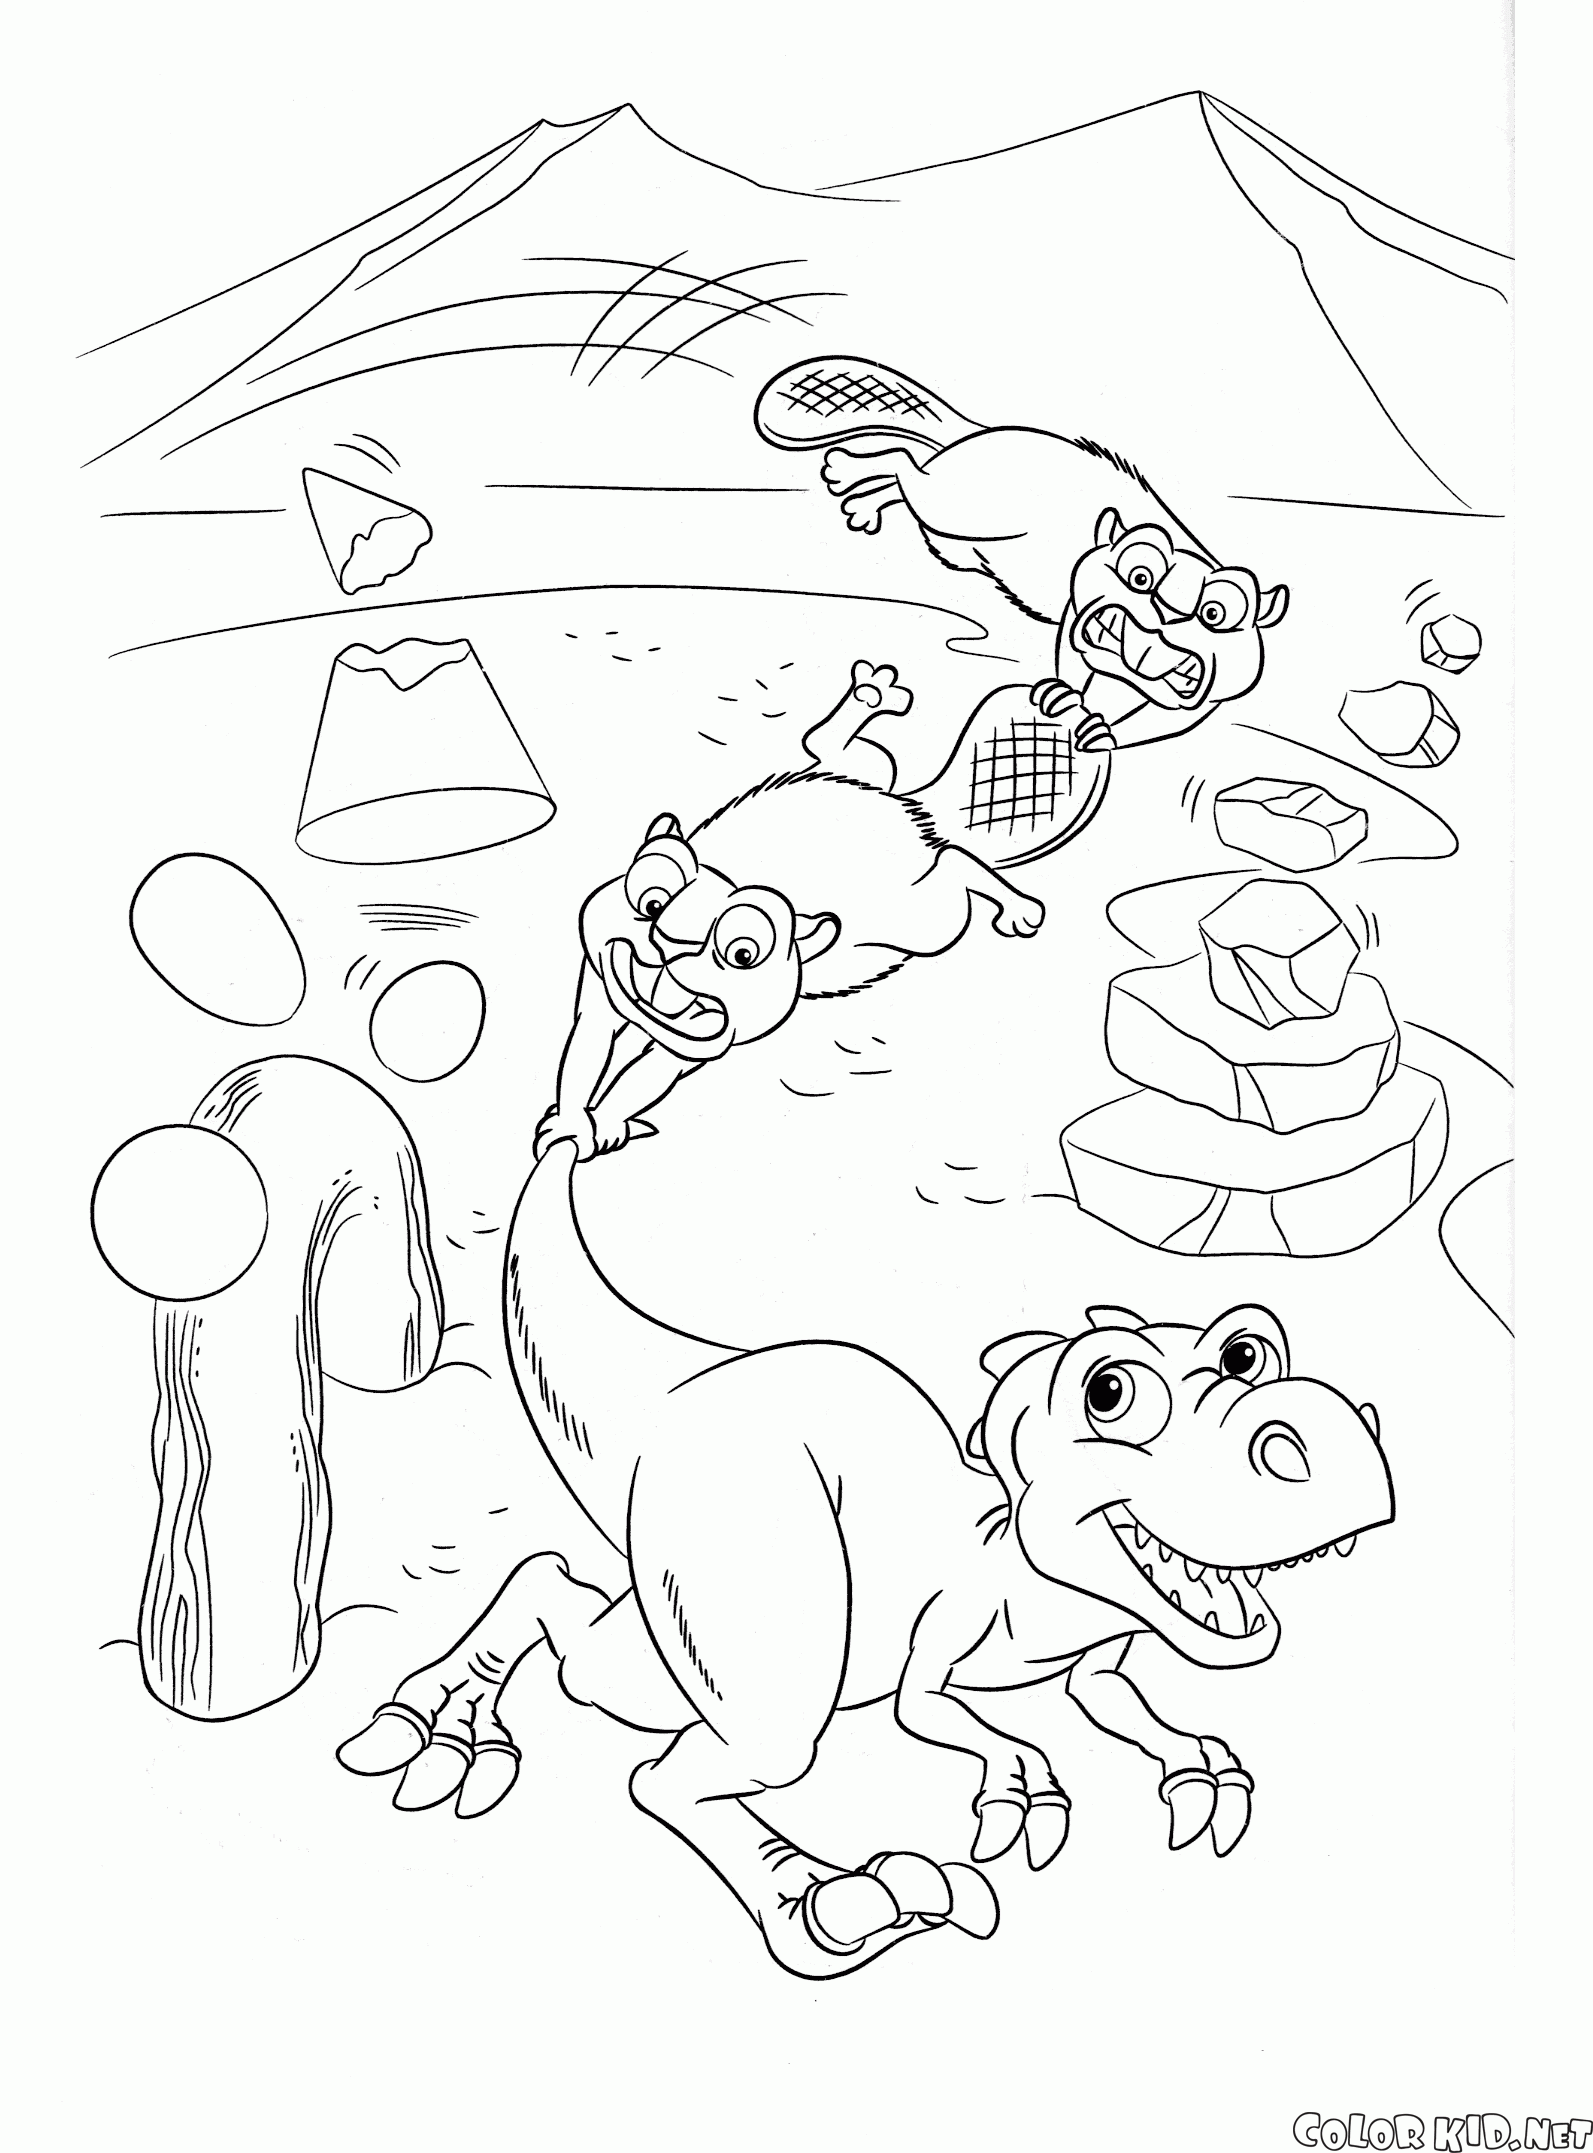 ベビービーバーと赤ちゃんの恐竜